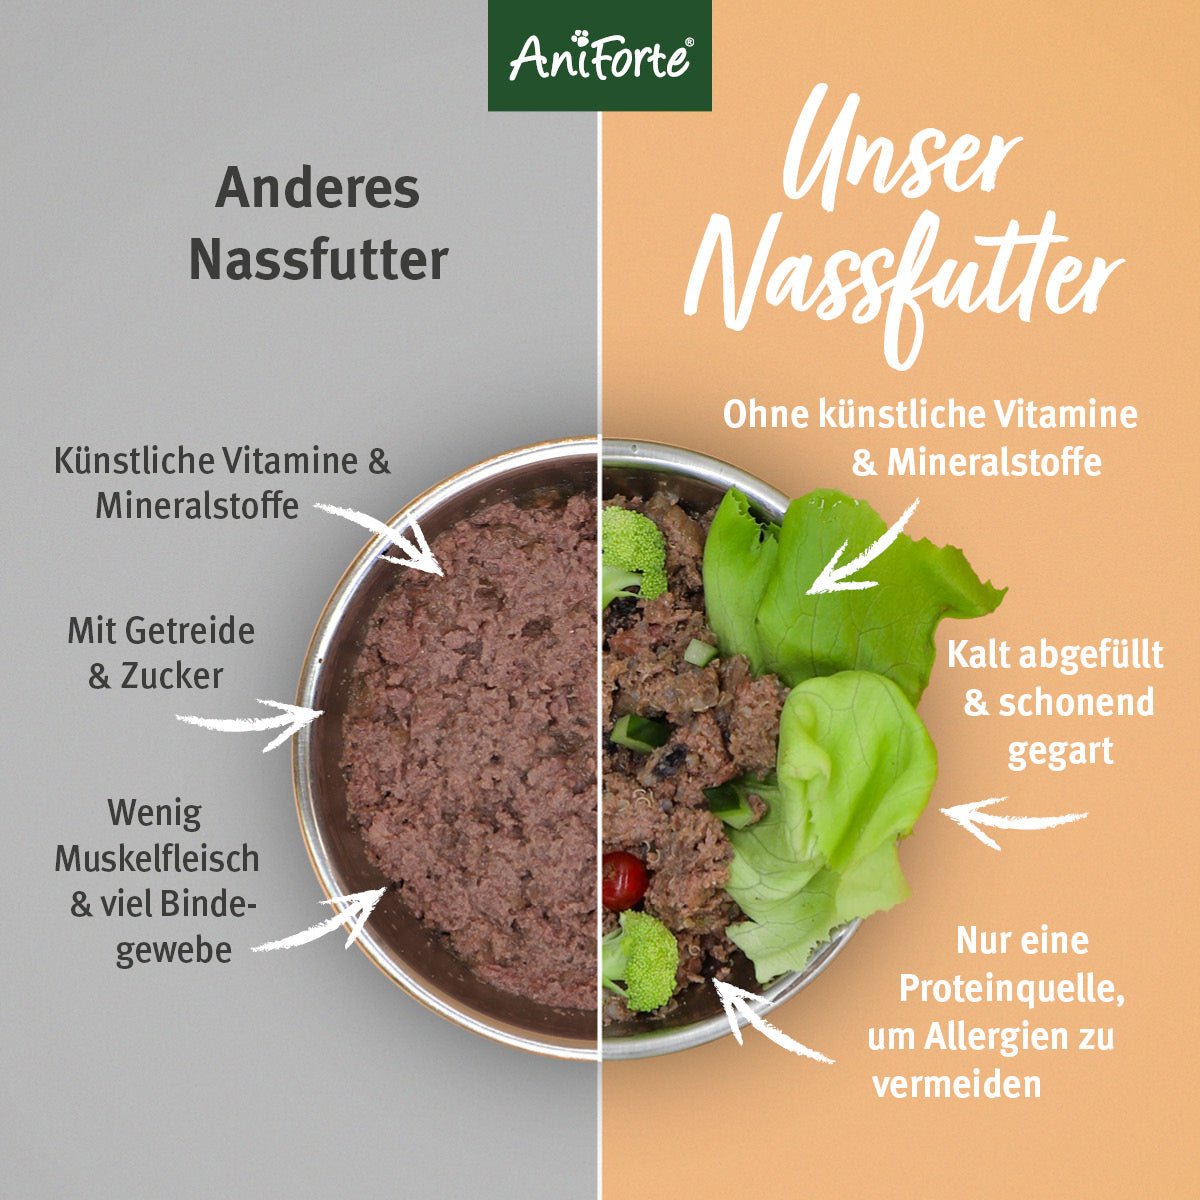 Nassfutter GreenfieldTurkey – "Pute mit Quinoa" - AniForte